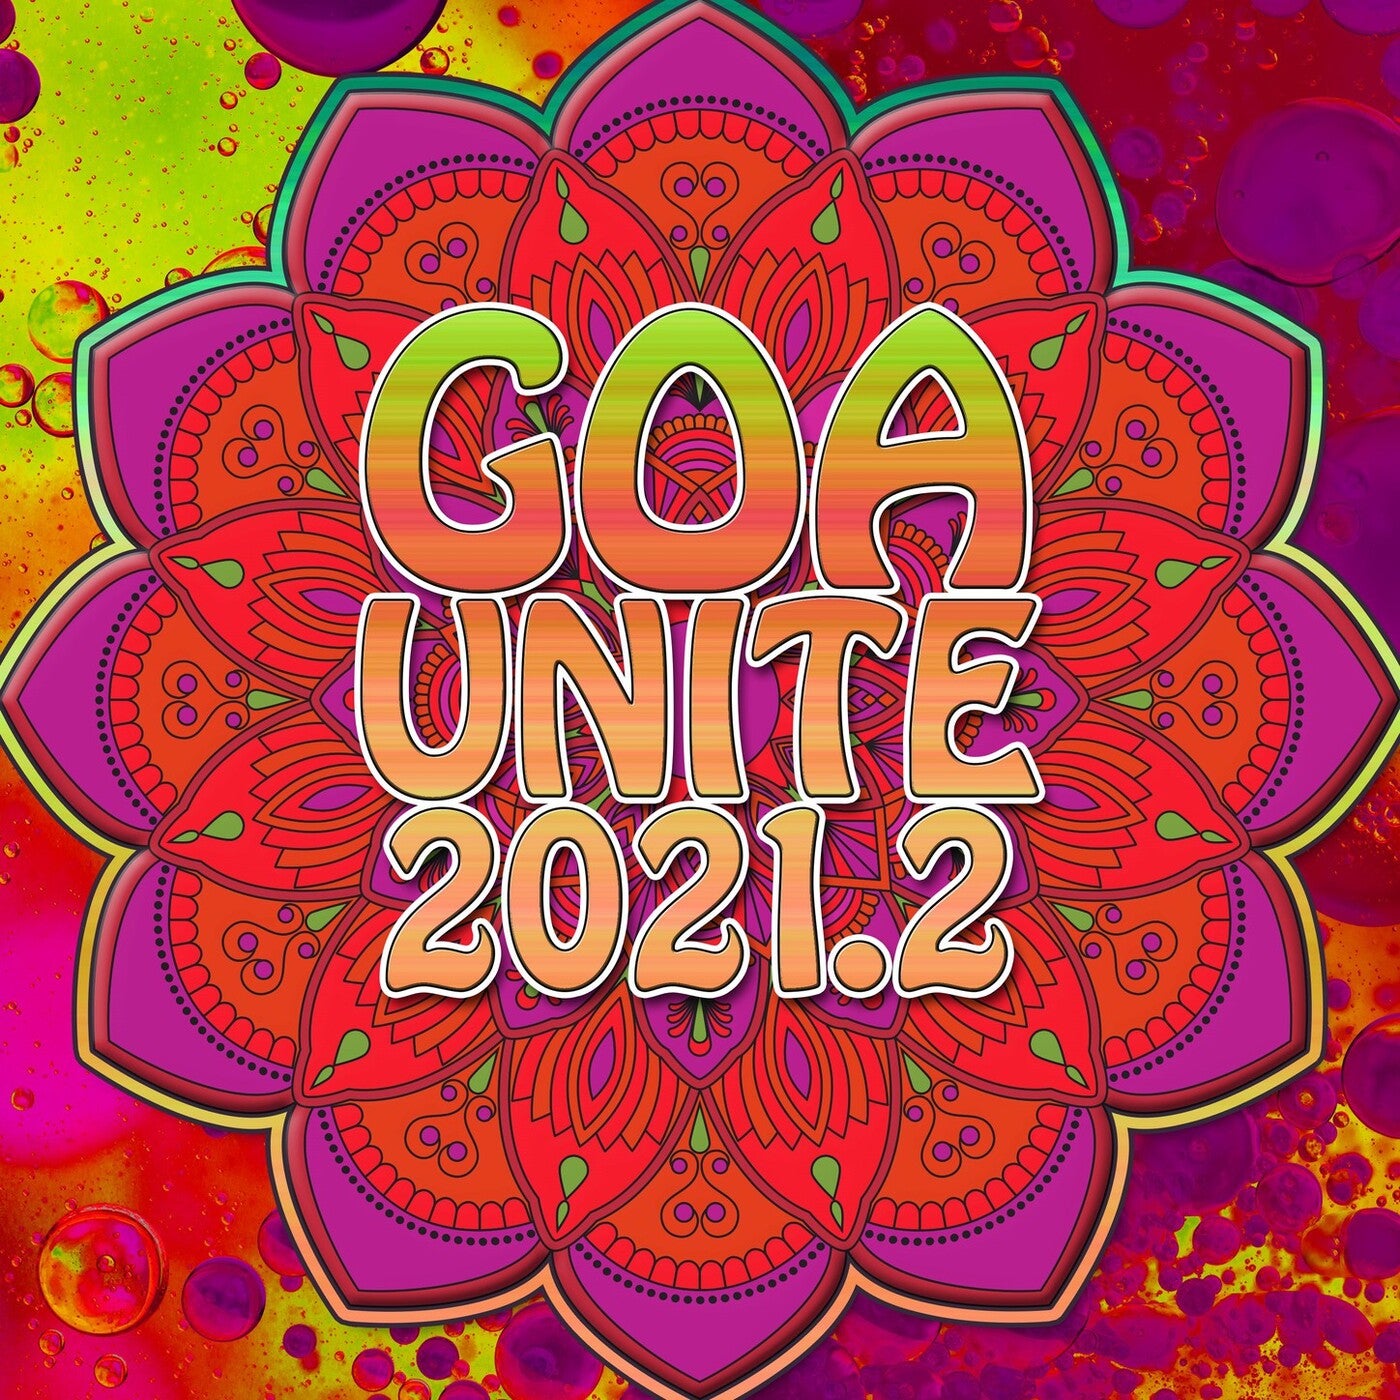 Goa Unite 2021.2